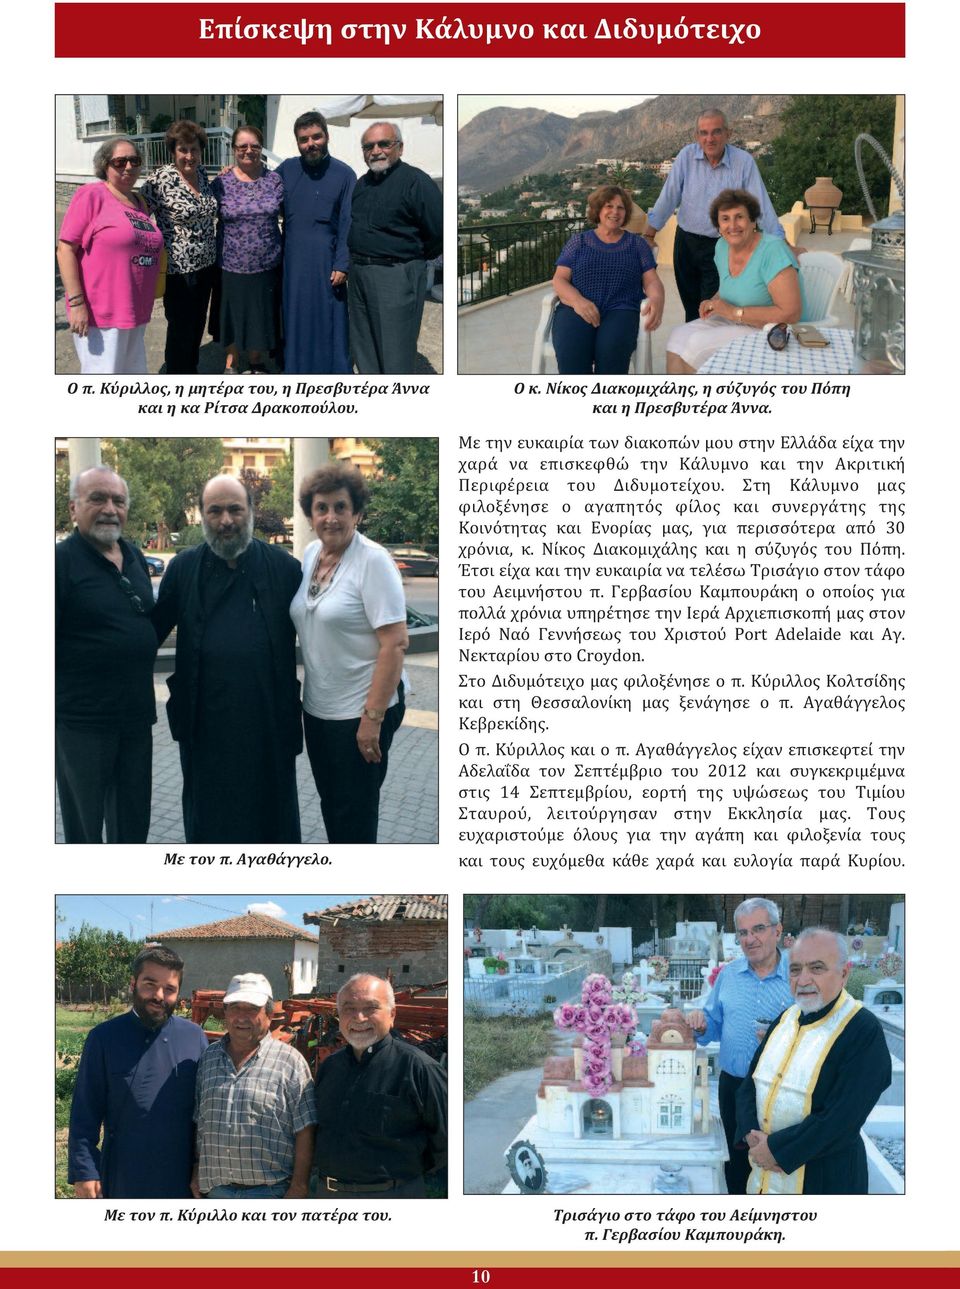 Στη Κάλυμνο μας φιλοξένησε ο αγαπητός φίλος και συνεργάτης της Κοινότητας και Ενορίας μας, για περισσότερα από 30 χρόνια, κ. Νίκος Διακομιχάλης και η σύζυγός του Πόπη.